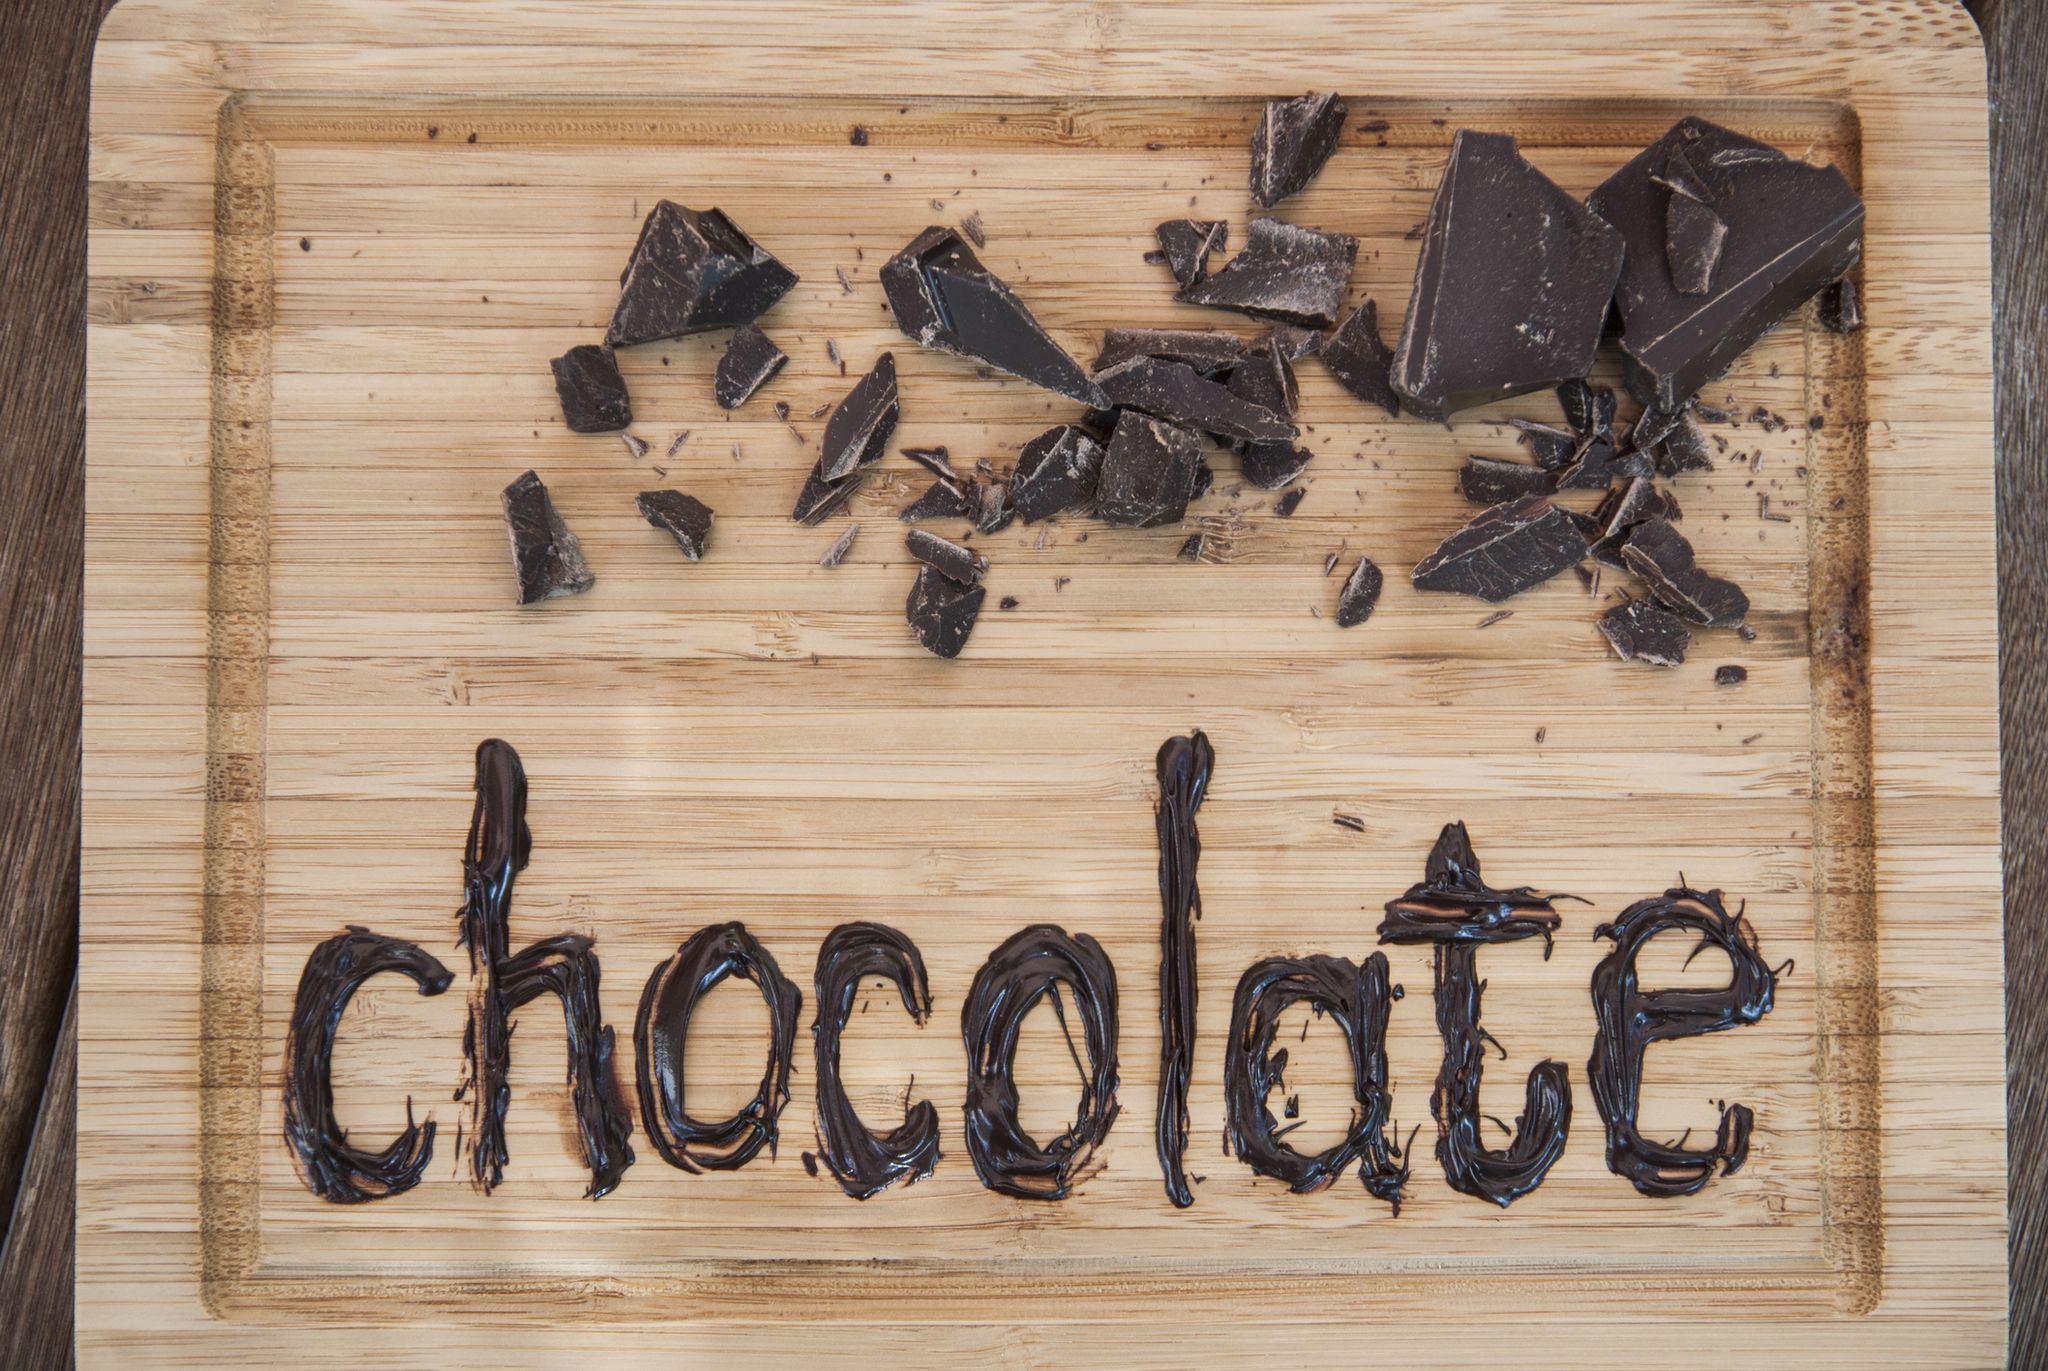 Chocolate written on cutting board